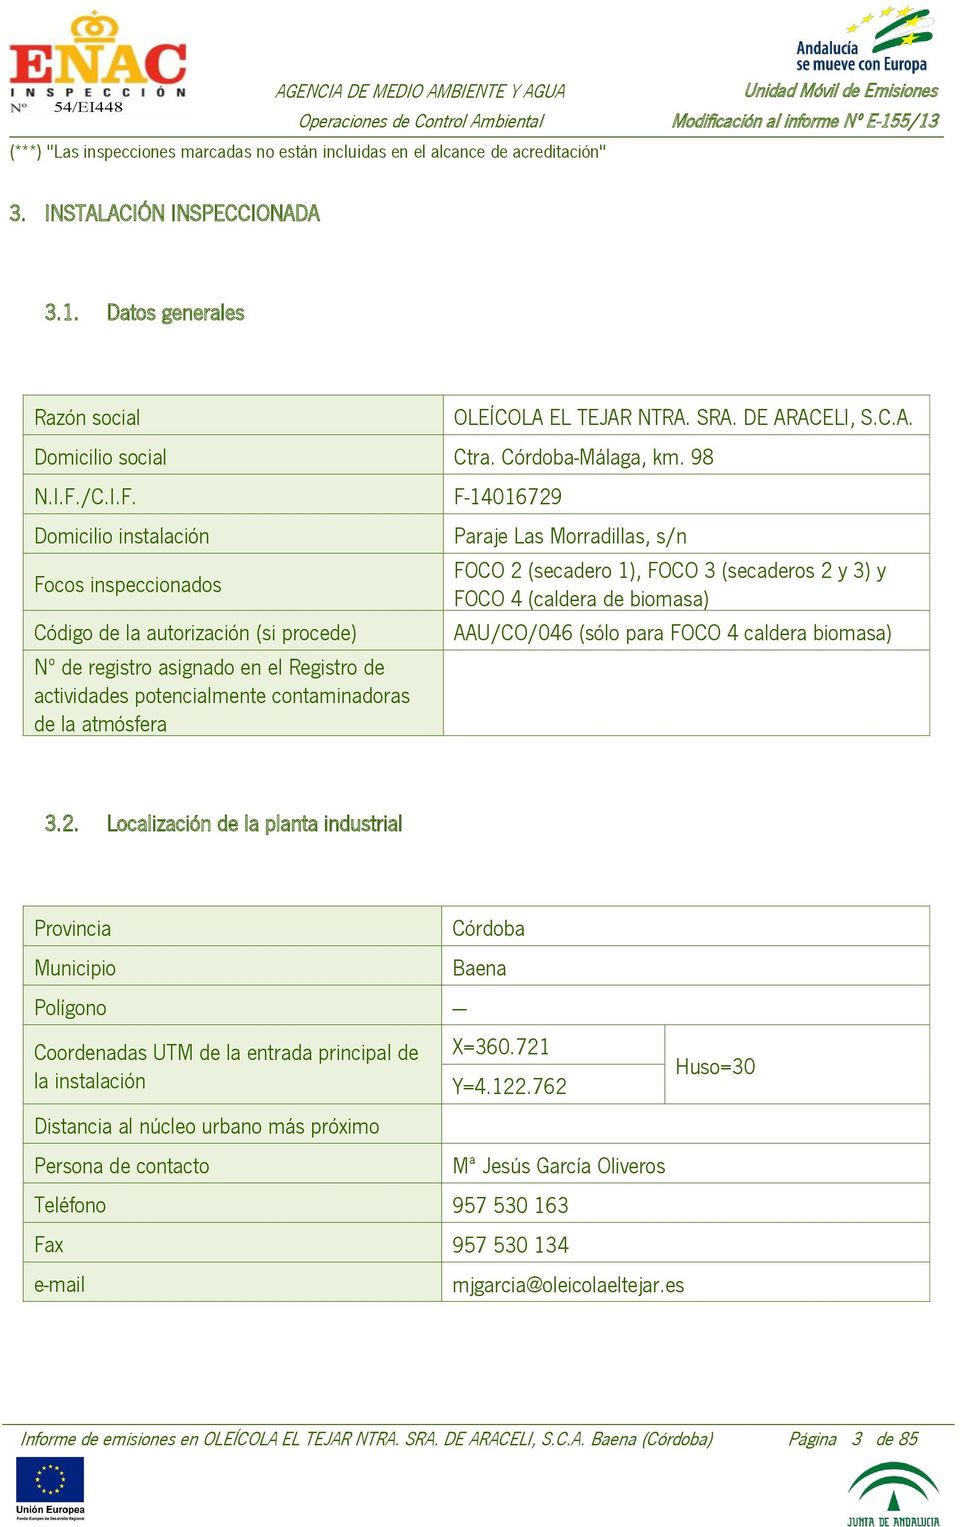 F-14016729 Domicilio instalación Focos inspeccionados Código de la autorización (si procede) Nº de registro asignado en el Registro de actividades potencialmente contaminadoras de la atmósfera Paraje